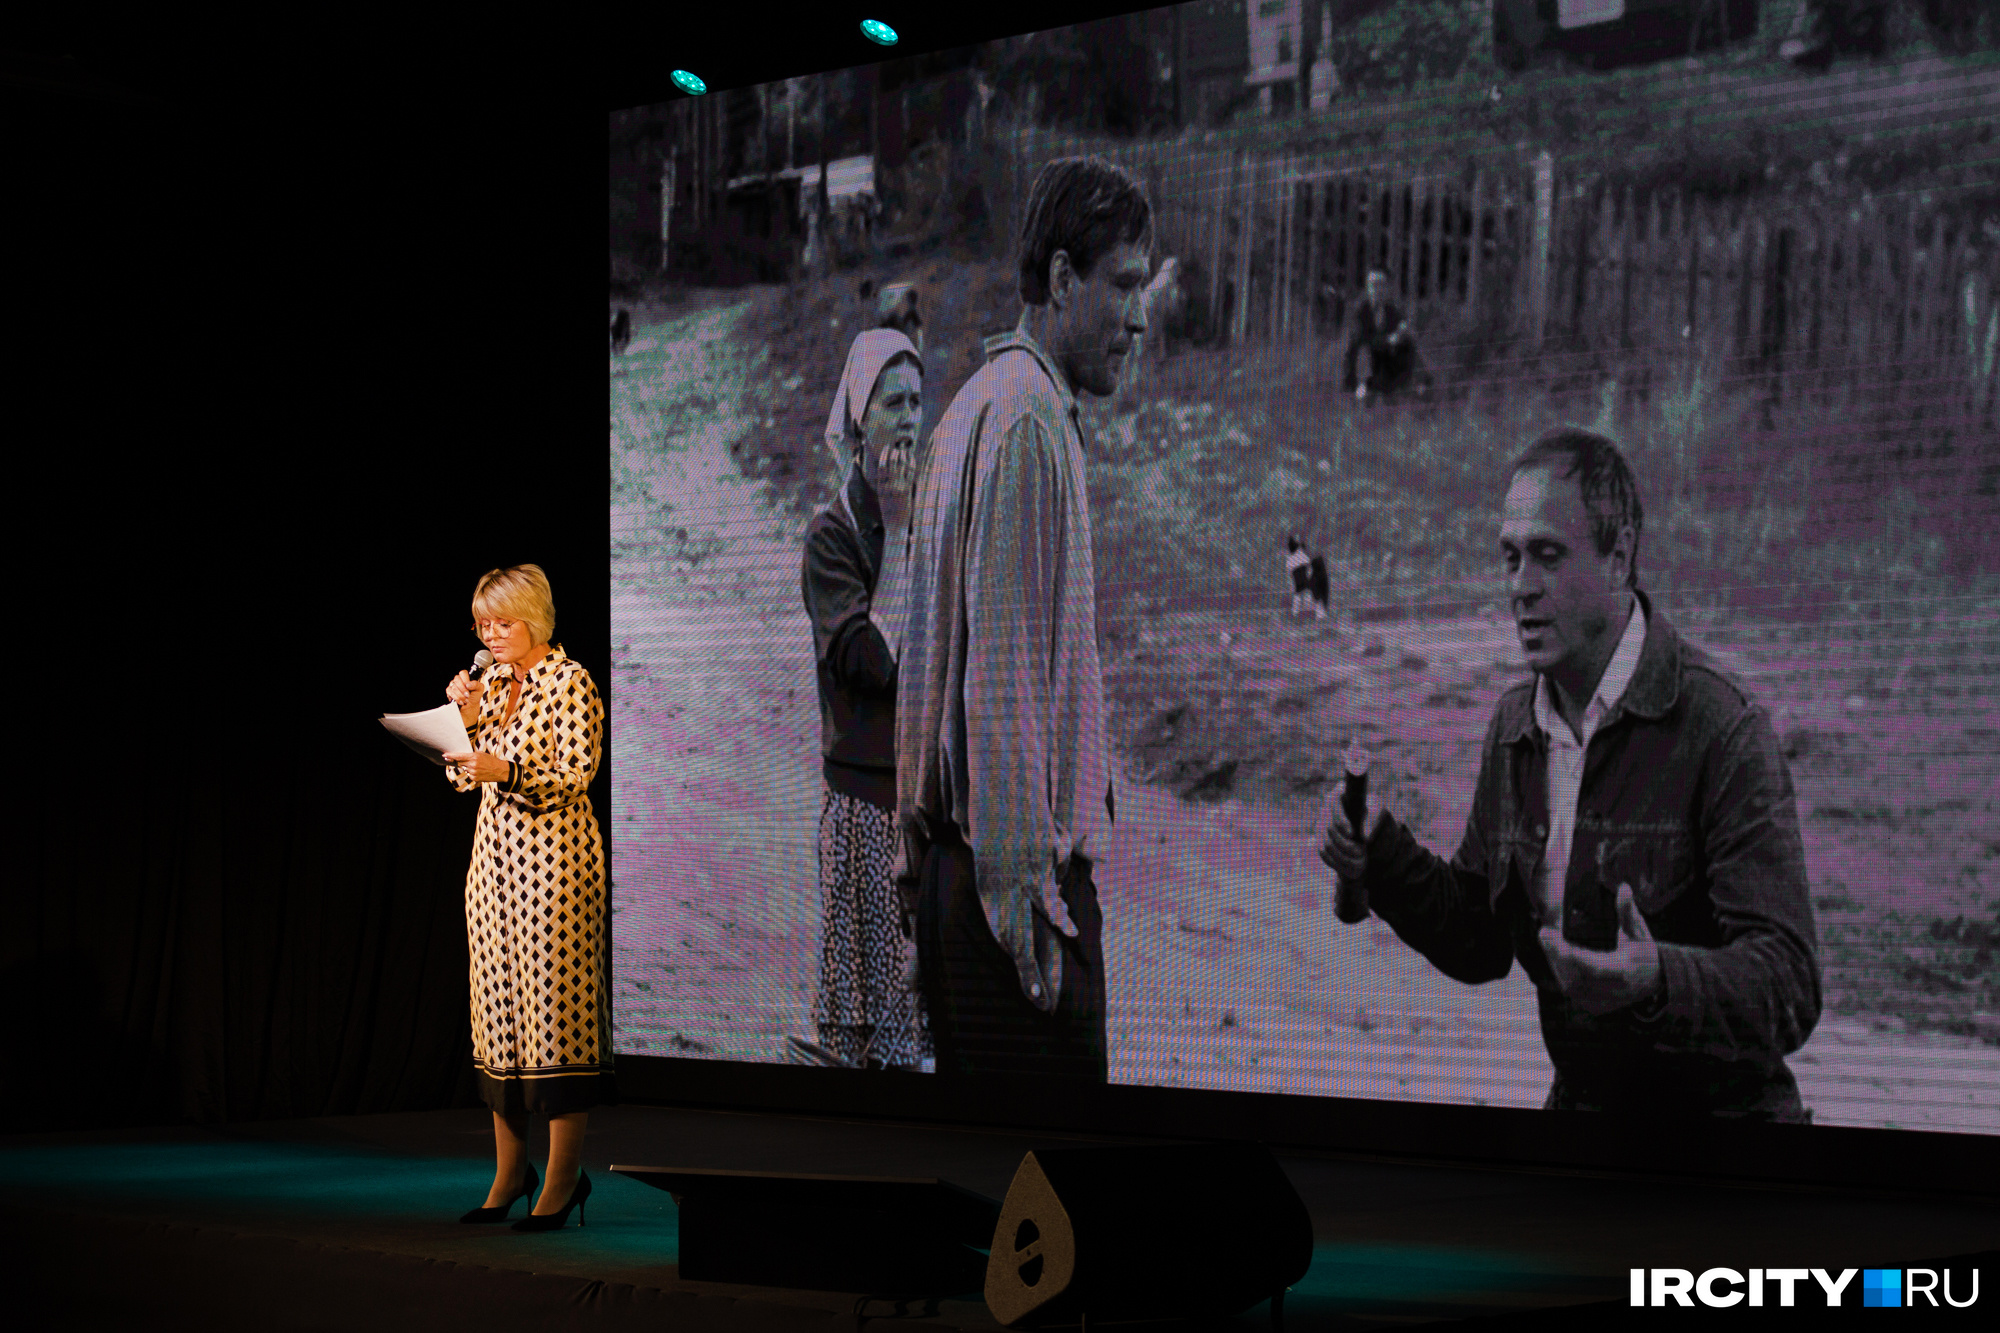 Юлия Меньшова выступает в Иркутске: на экране — фотография со съемочной площадки фильма «Любовь и голуби»